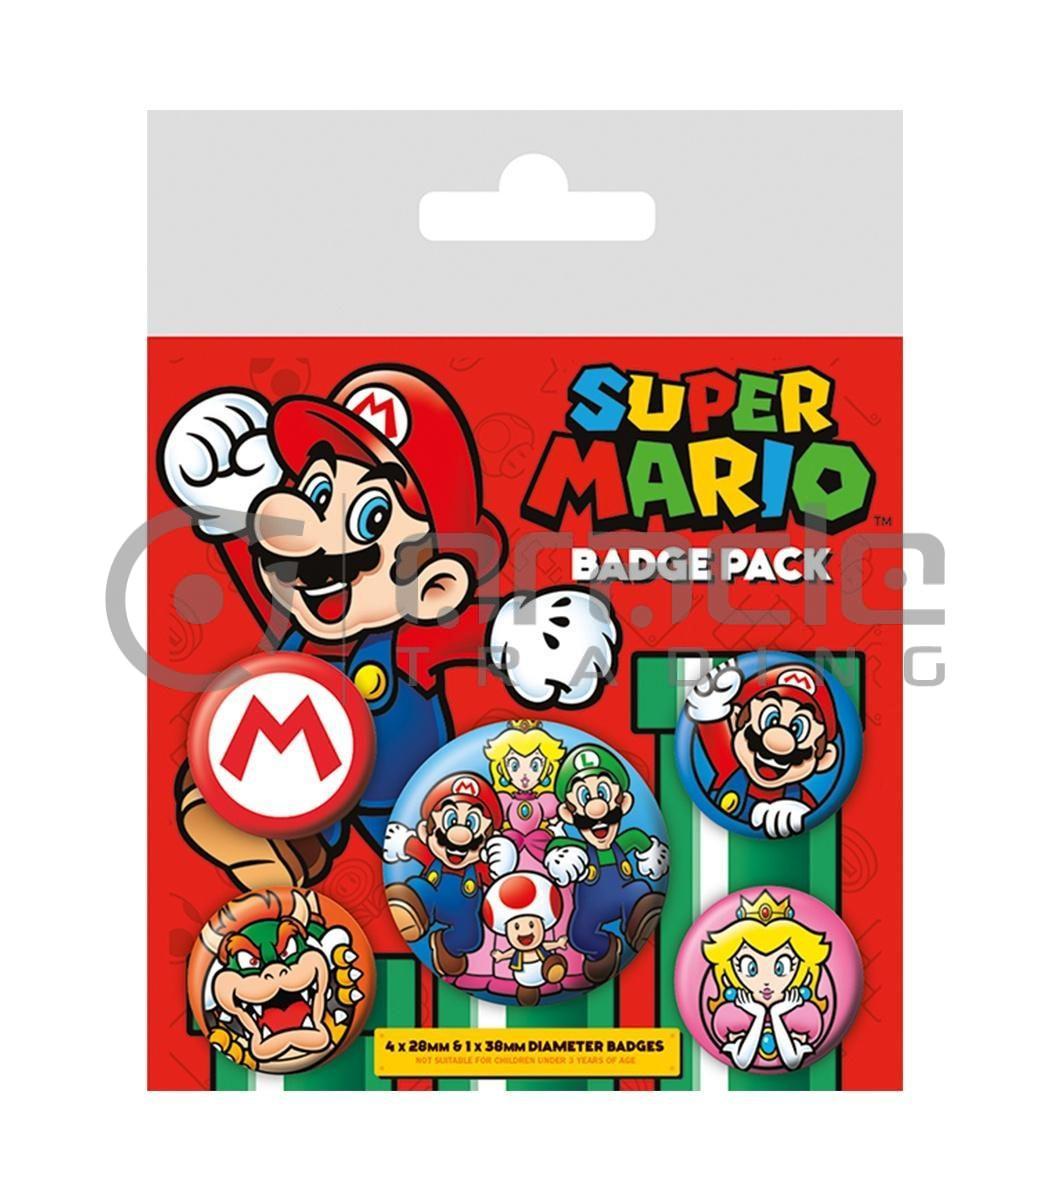 Super Mario Badge Pack